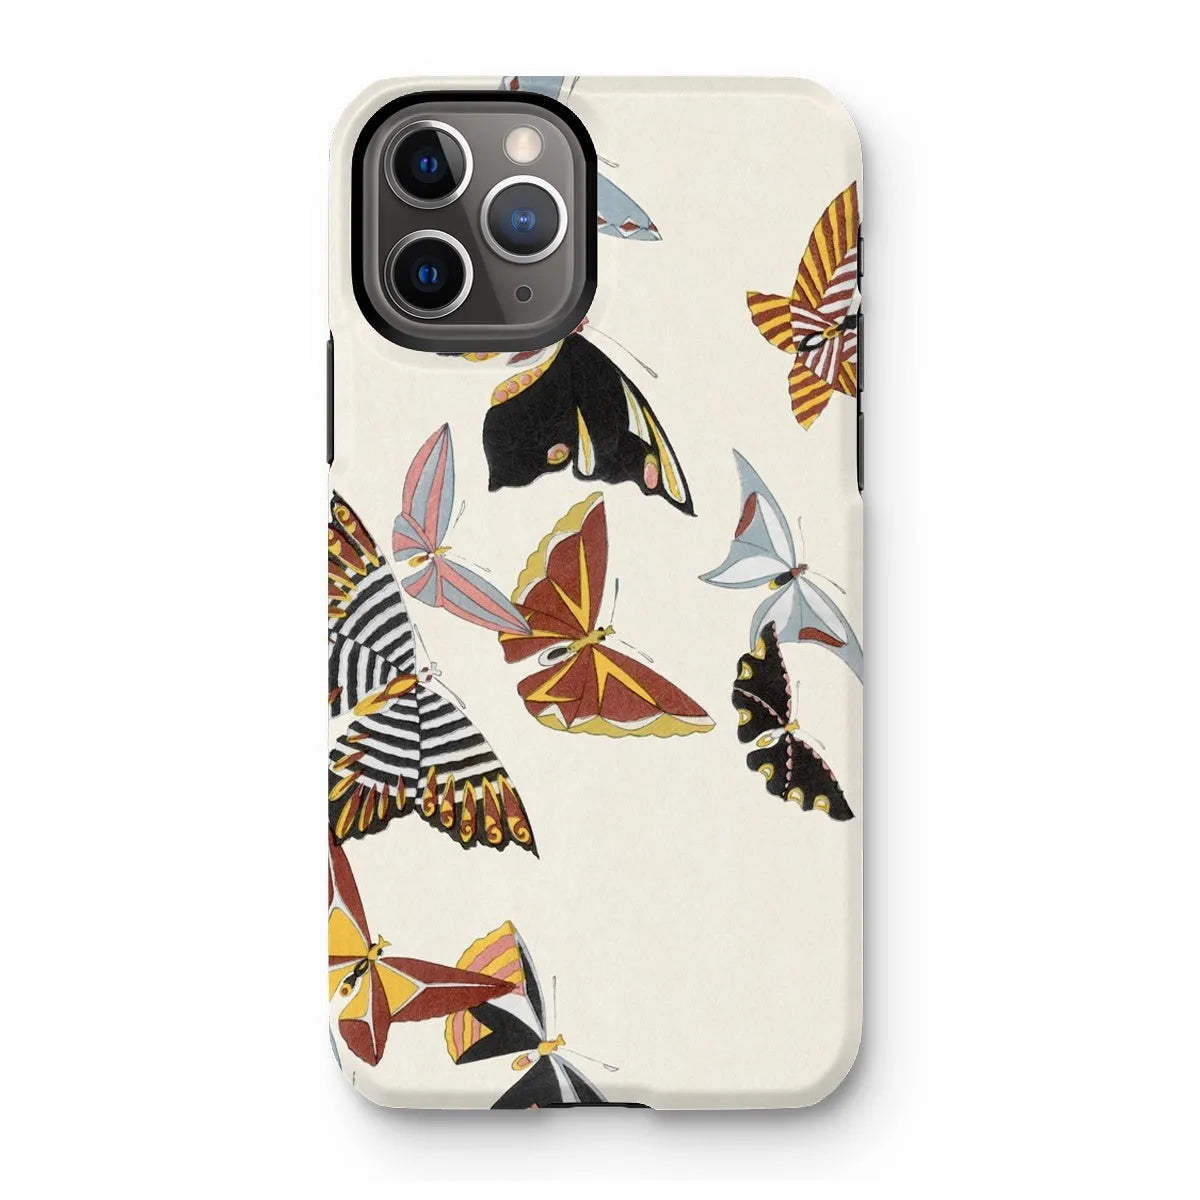 Japanese Butterfly Art Phone Case - Kamisaka Sekka - Iphone 11 Pro / Matte - Mobile Phone Cases - Aesthetic Art